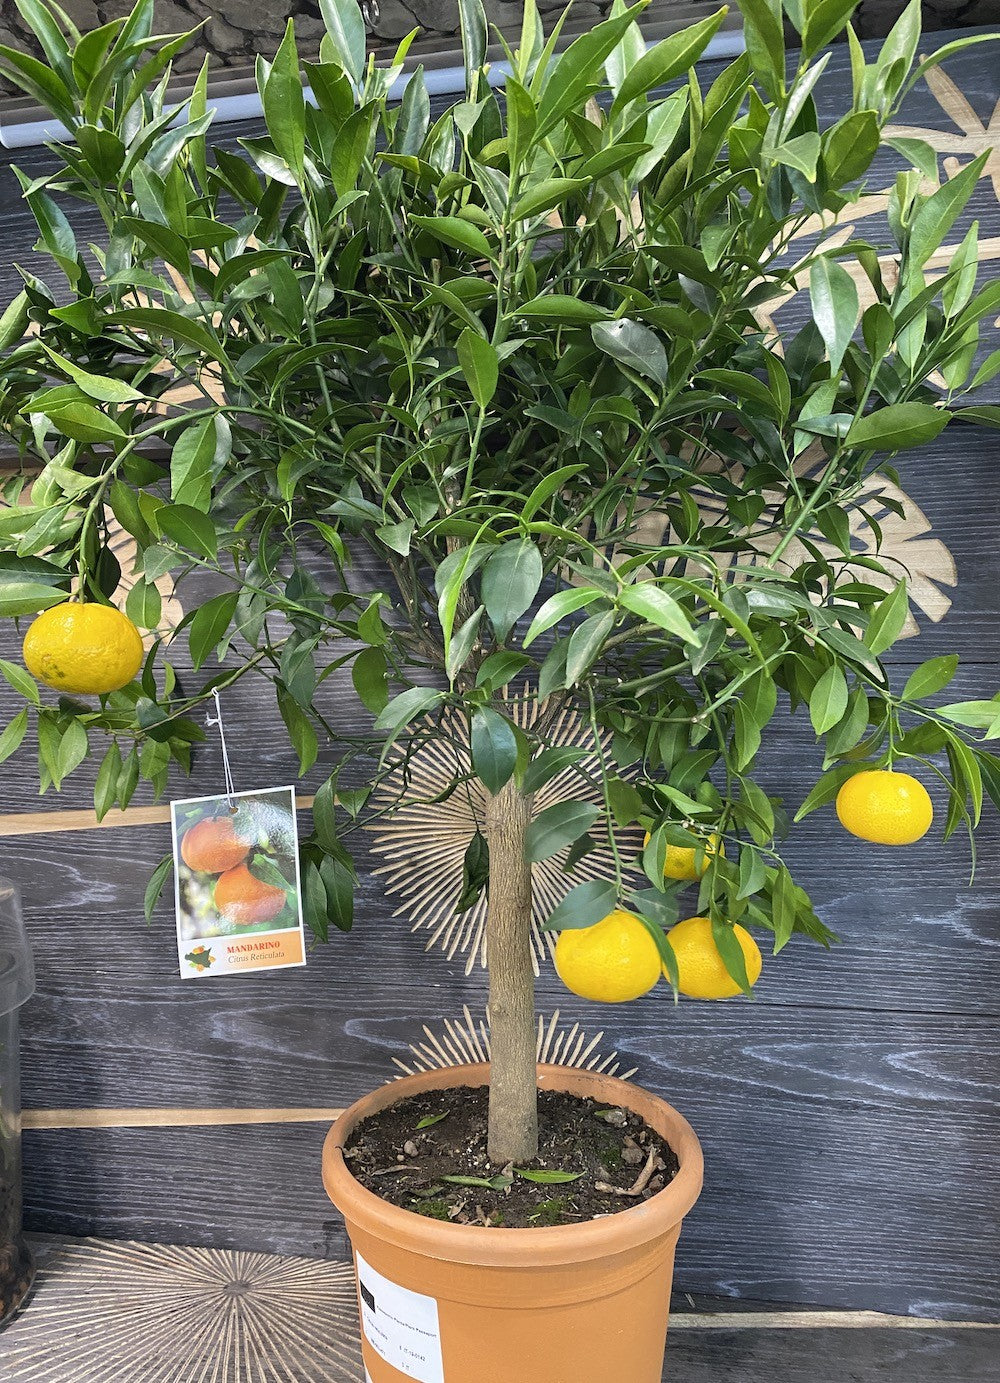 Citrus reticulata Blanco (mandarin)